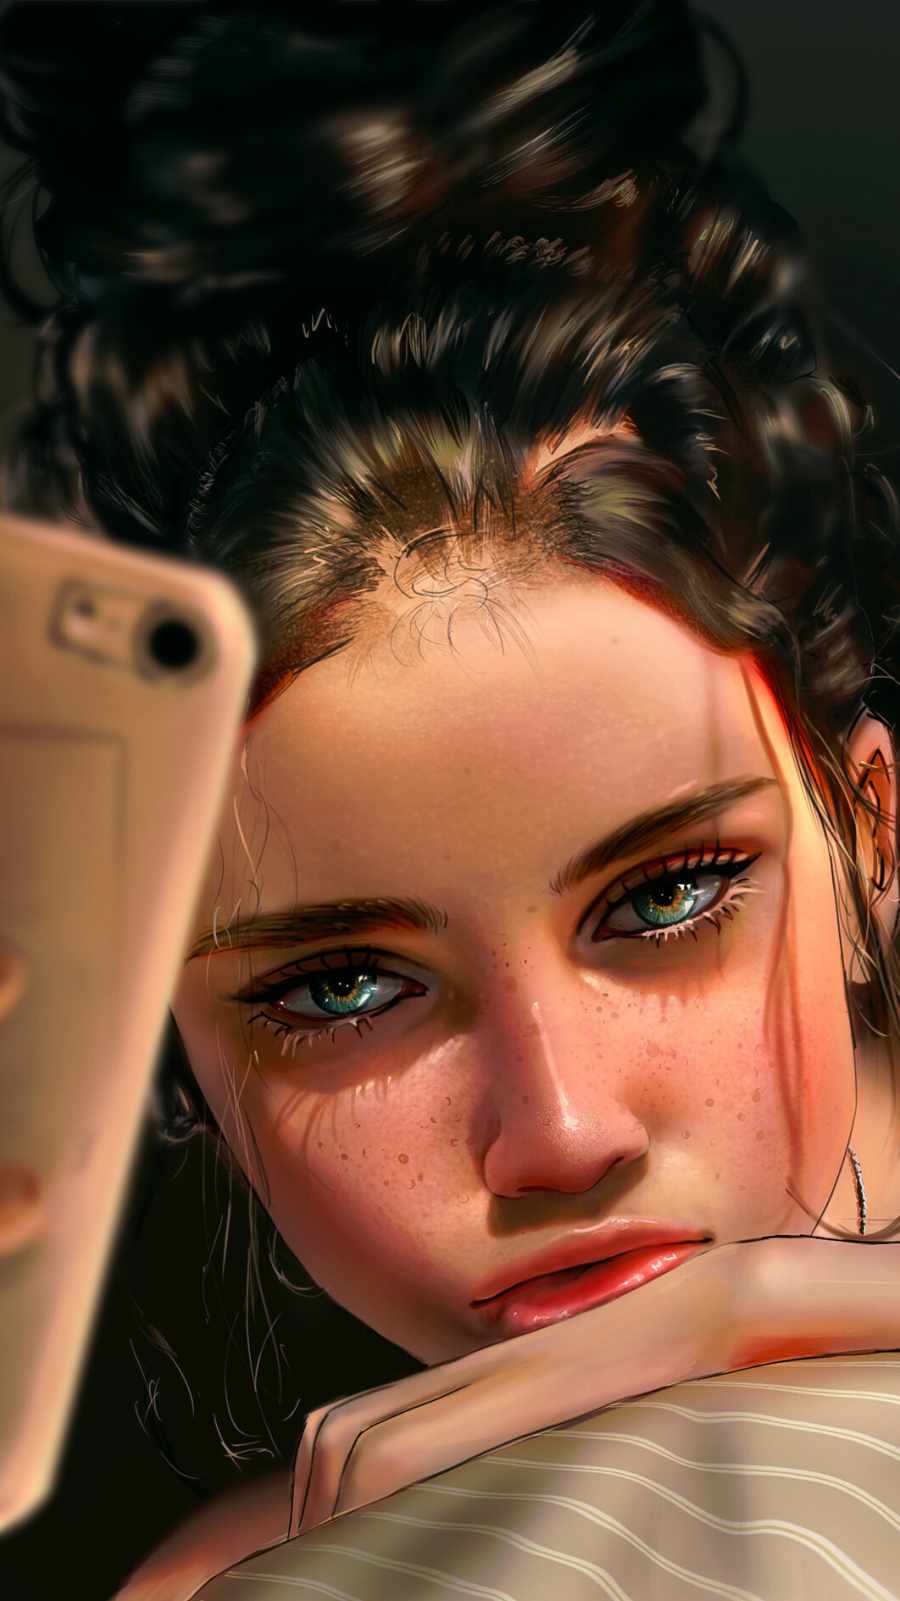 Selfie Girl iPhone Wallpaper